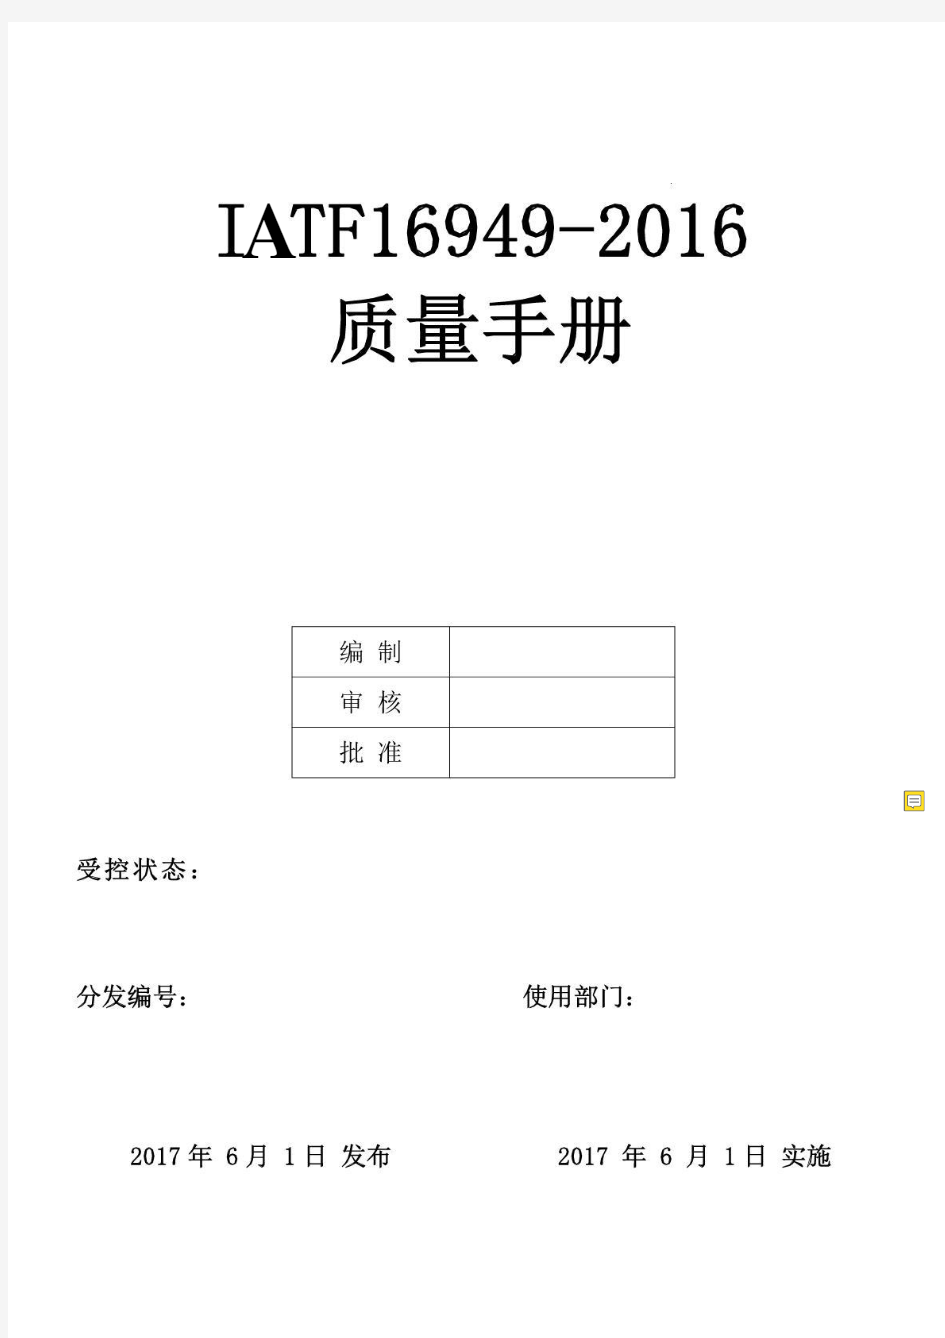 全套IATF16949-2019新版质量手册和程序文件及表格